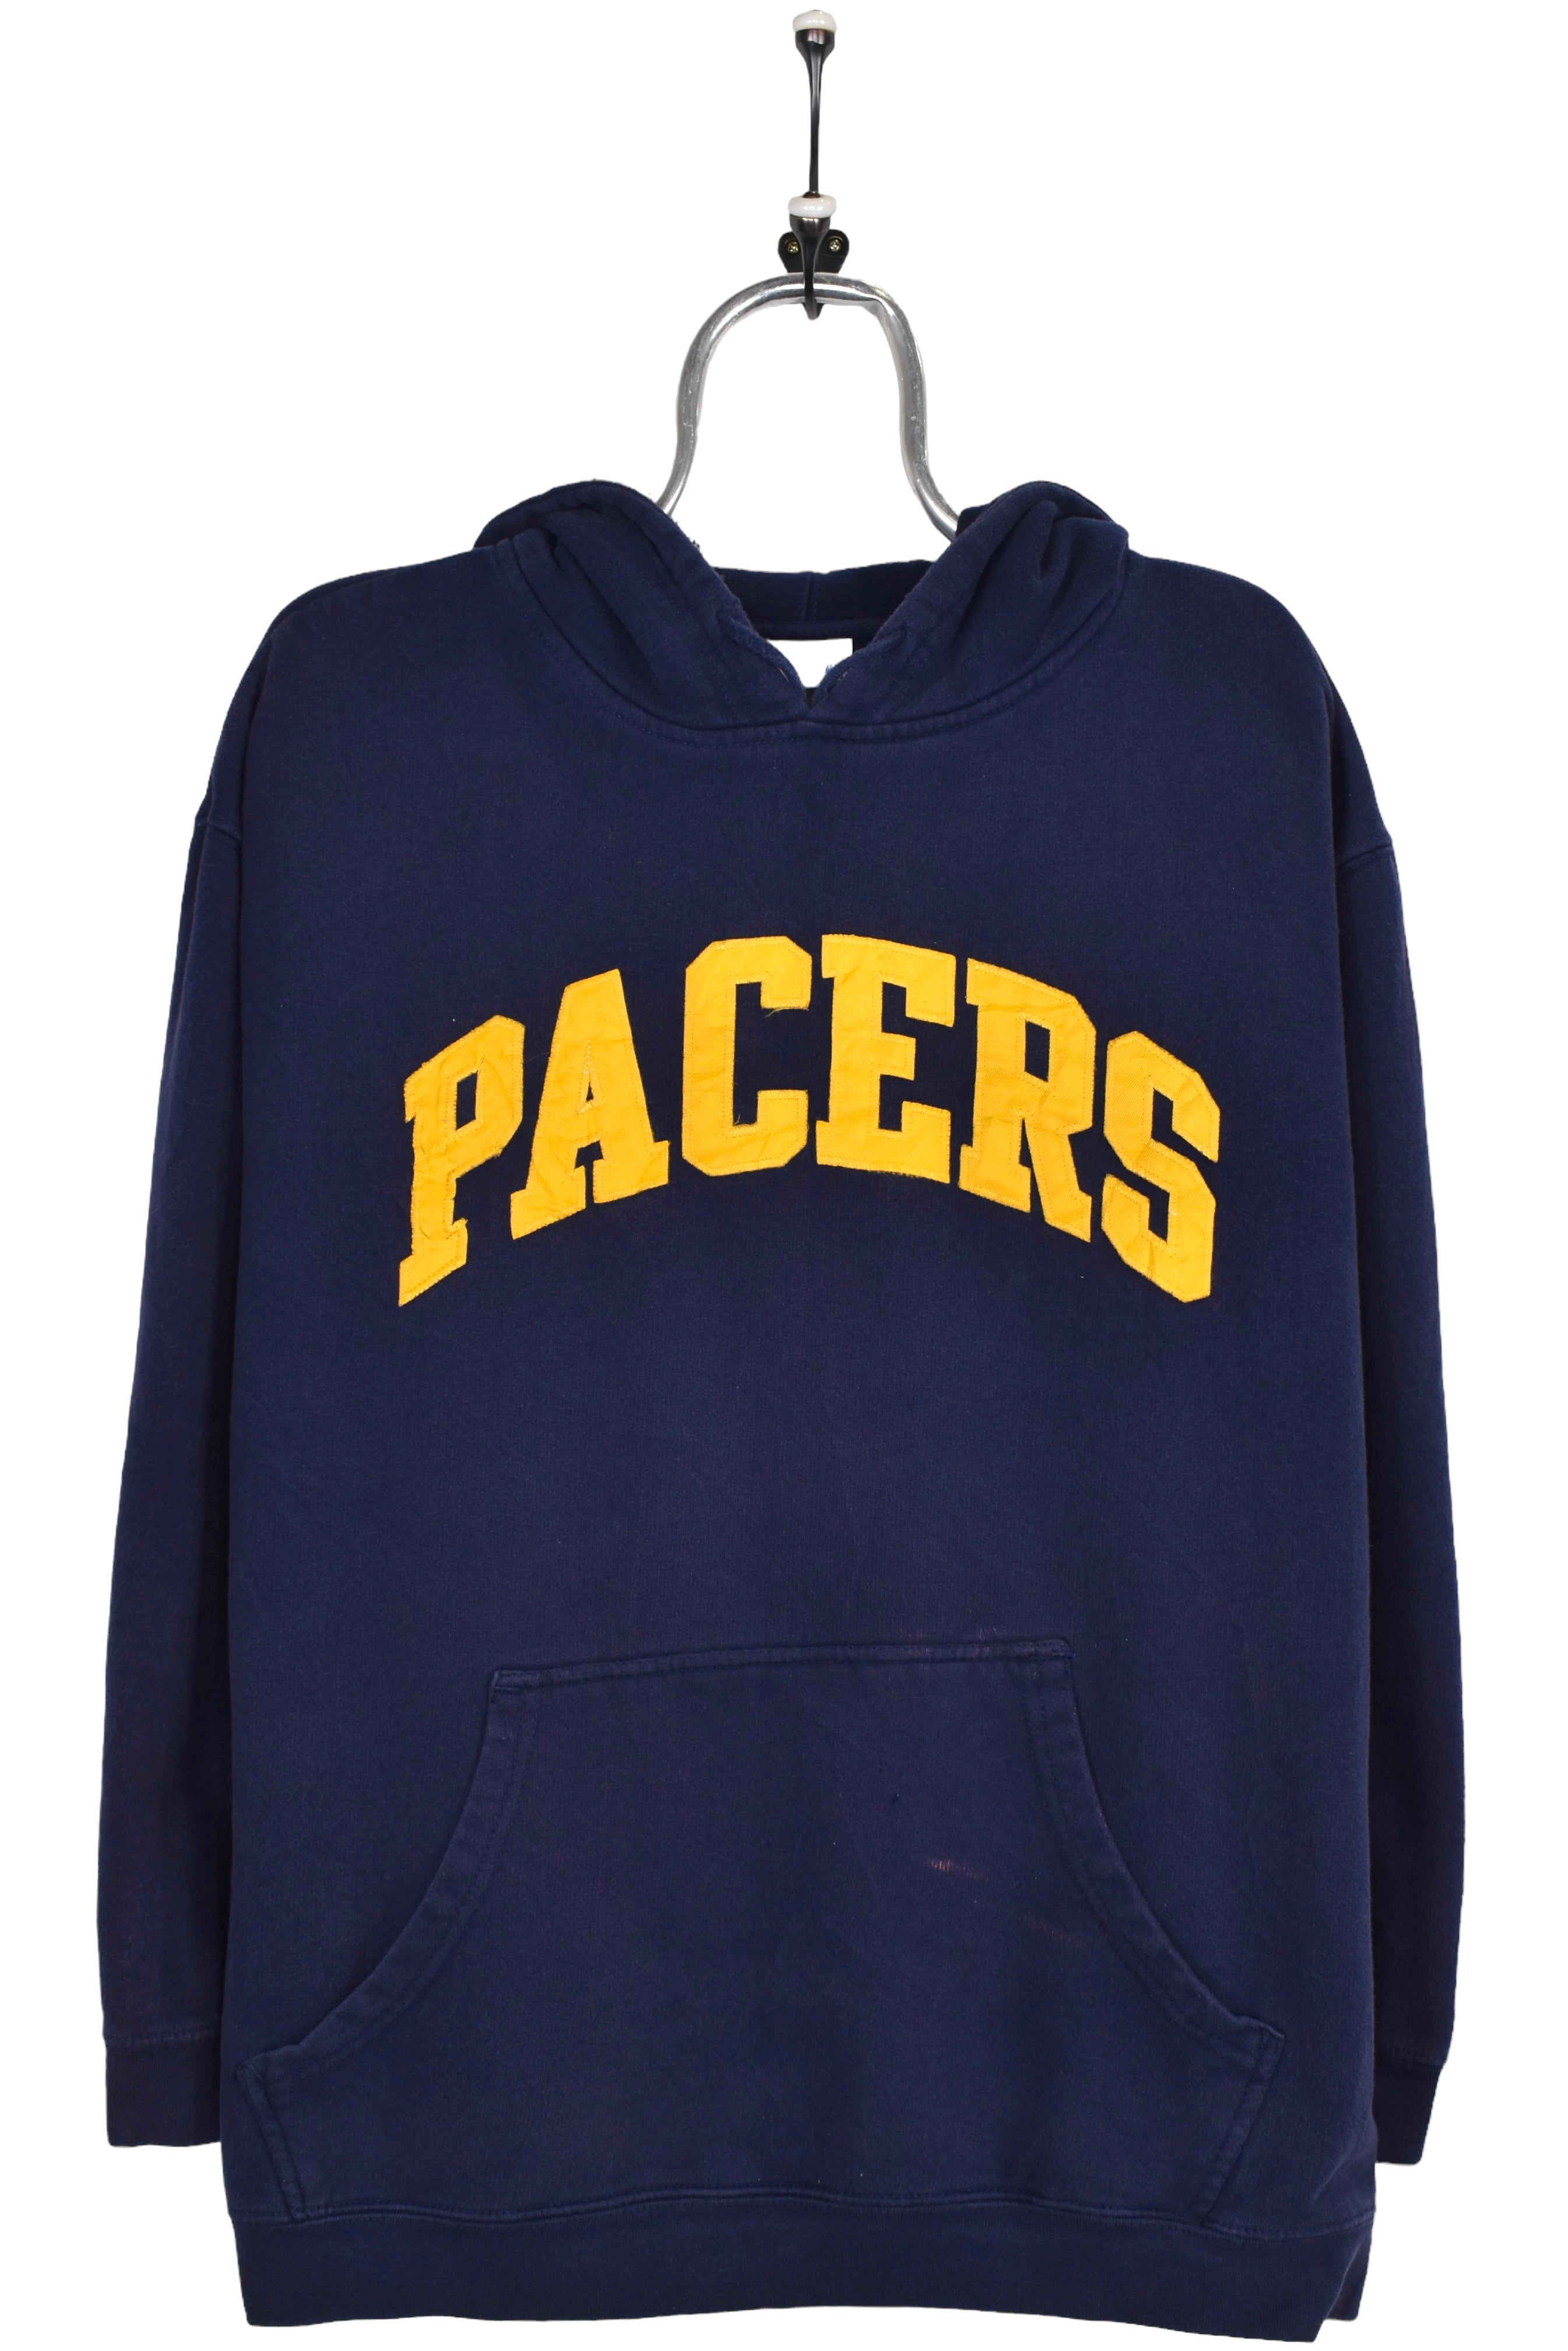 Vintage Indiana Pacers hoodie, navy NBA embroidered sweatshirt - Large